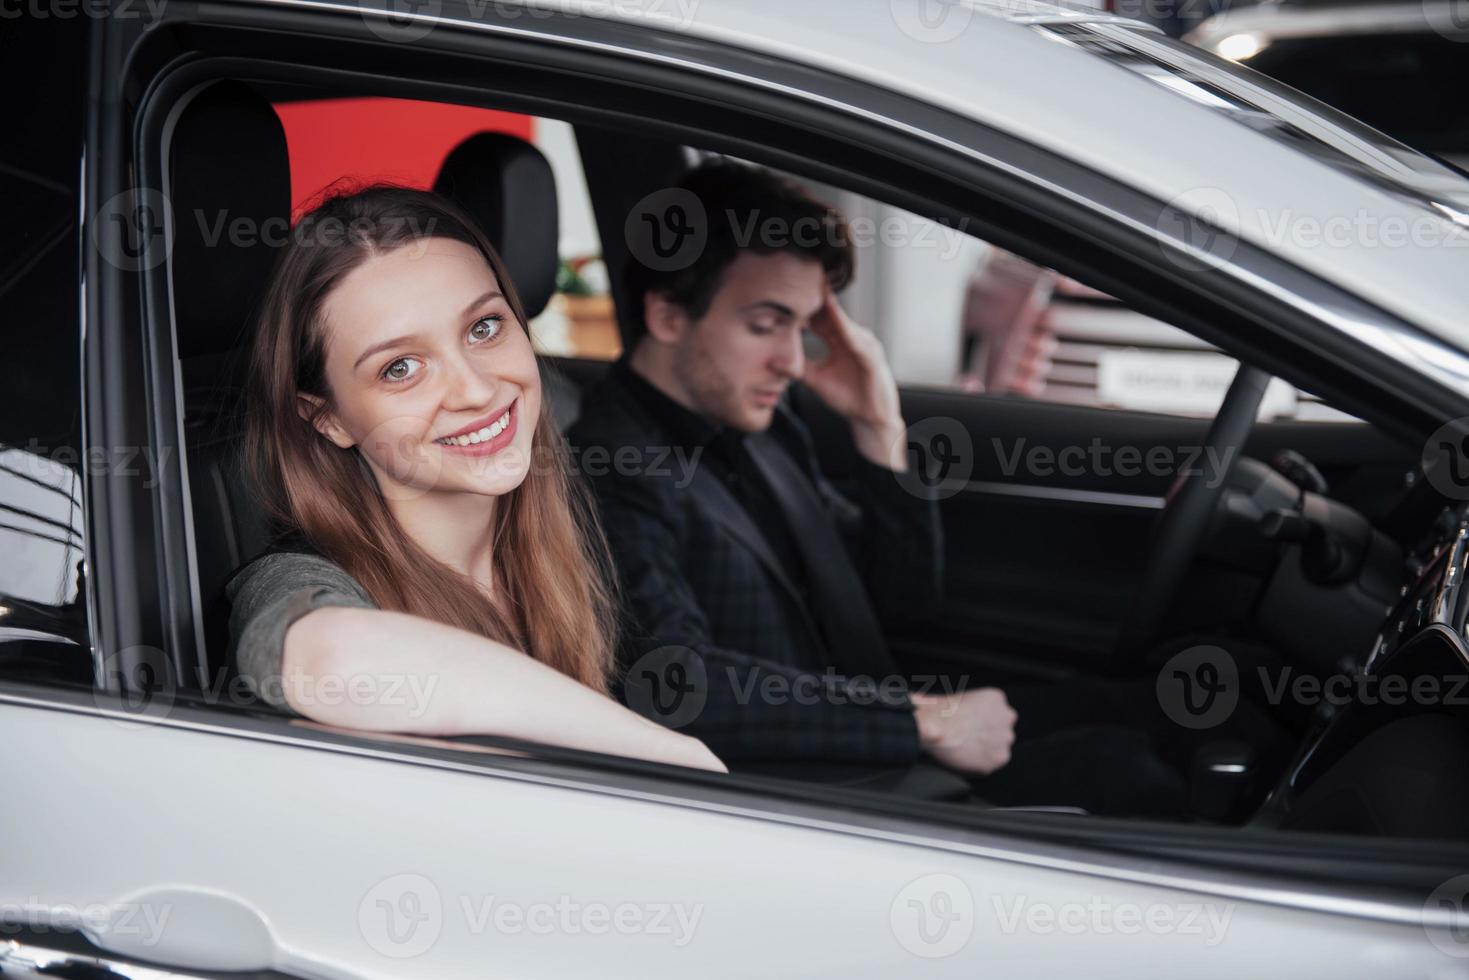 fiers propriétaires. beau jeune couple heureux étreignant debout près de leur voiture nouvellement achetée souriant joyeusement montrant les clés de voiture à la caméra copyspace famille amour relation style de vie achat consumérisme photo